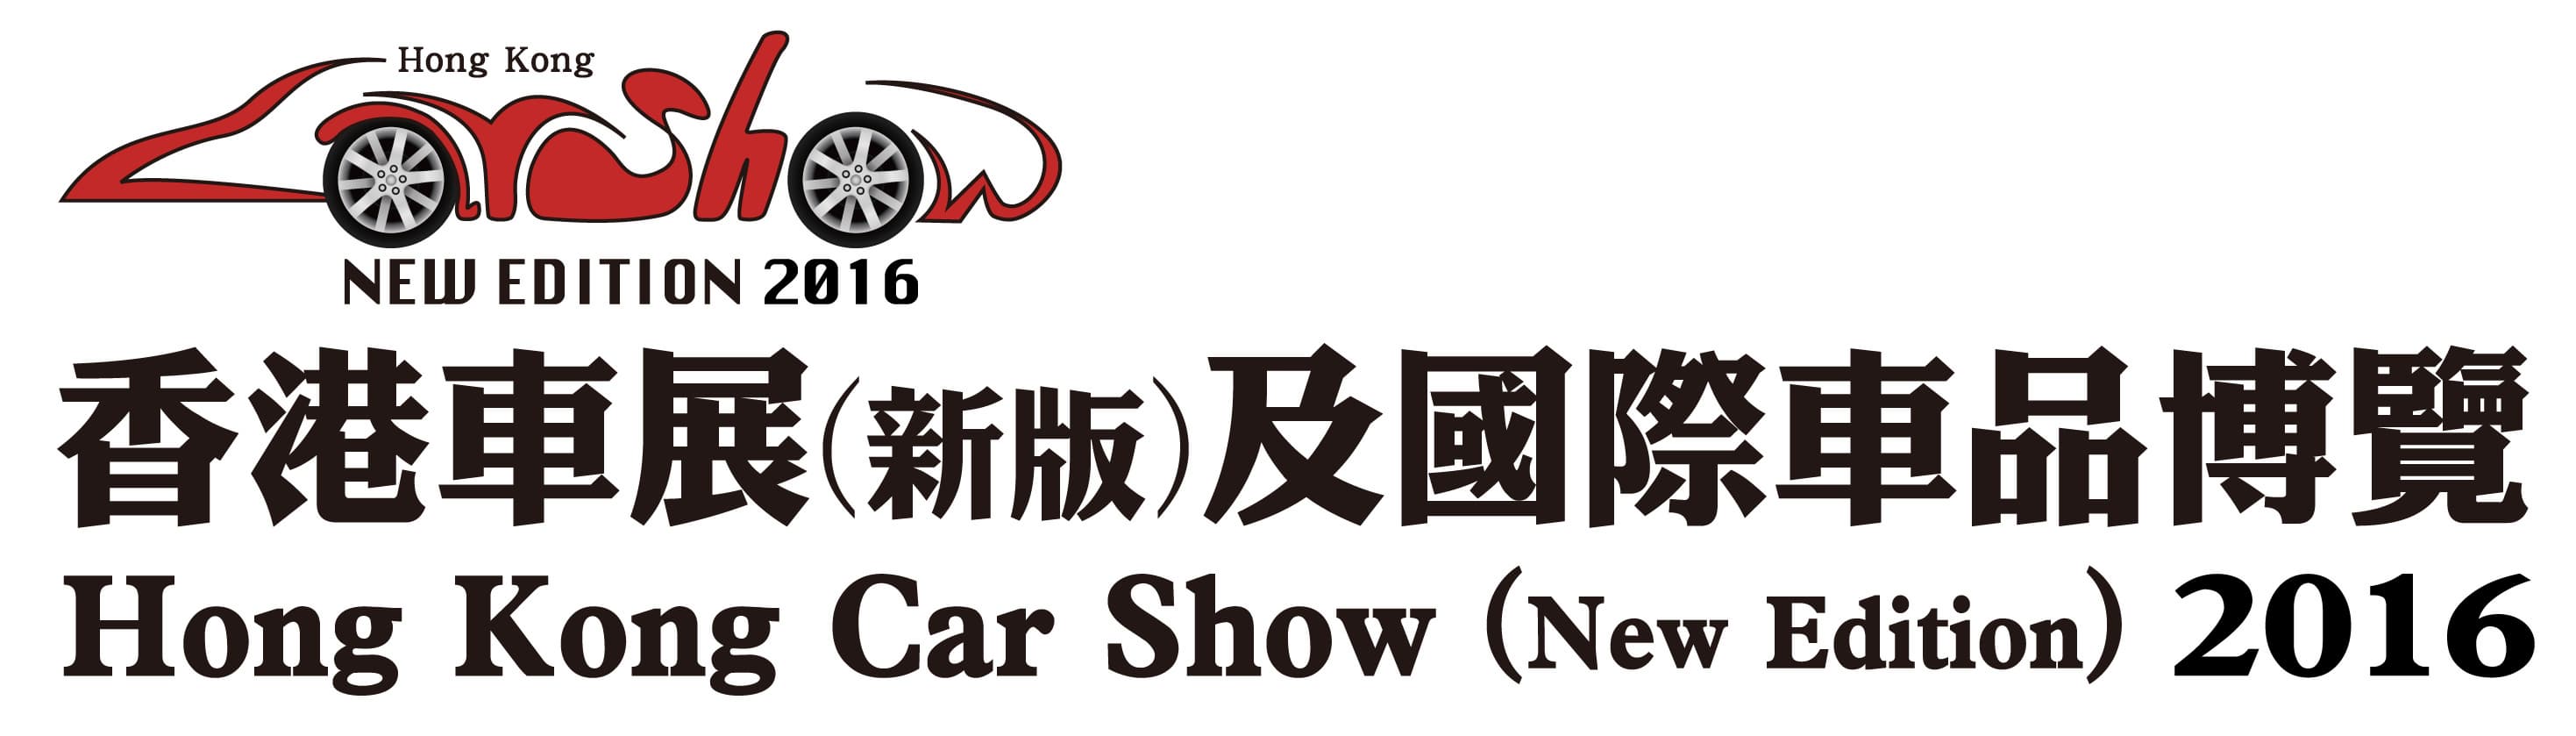 Hong Kong Car Show _New Edition_ 2016